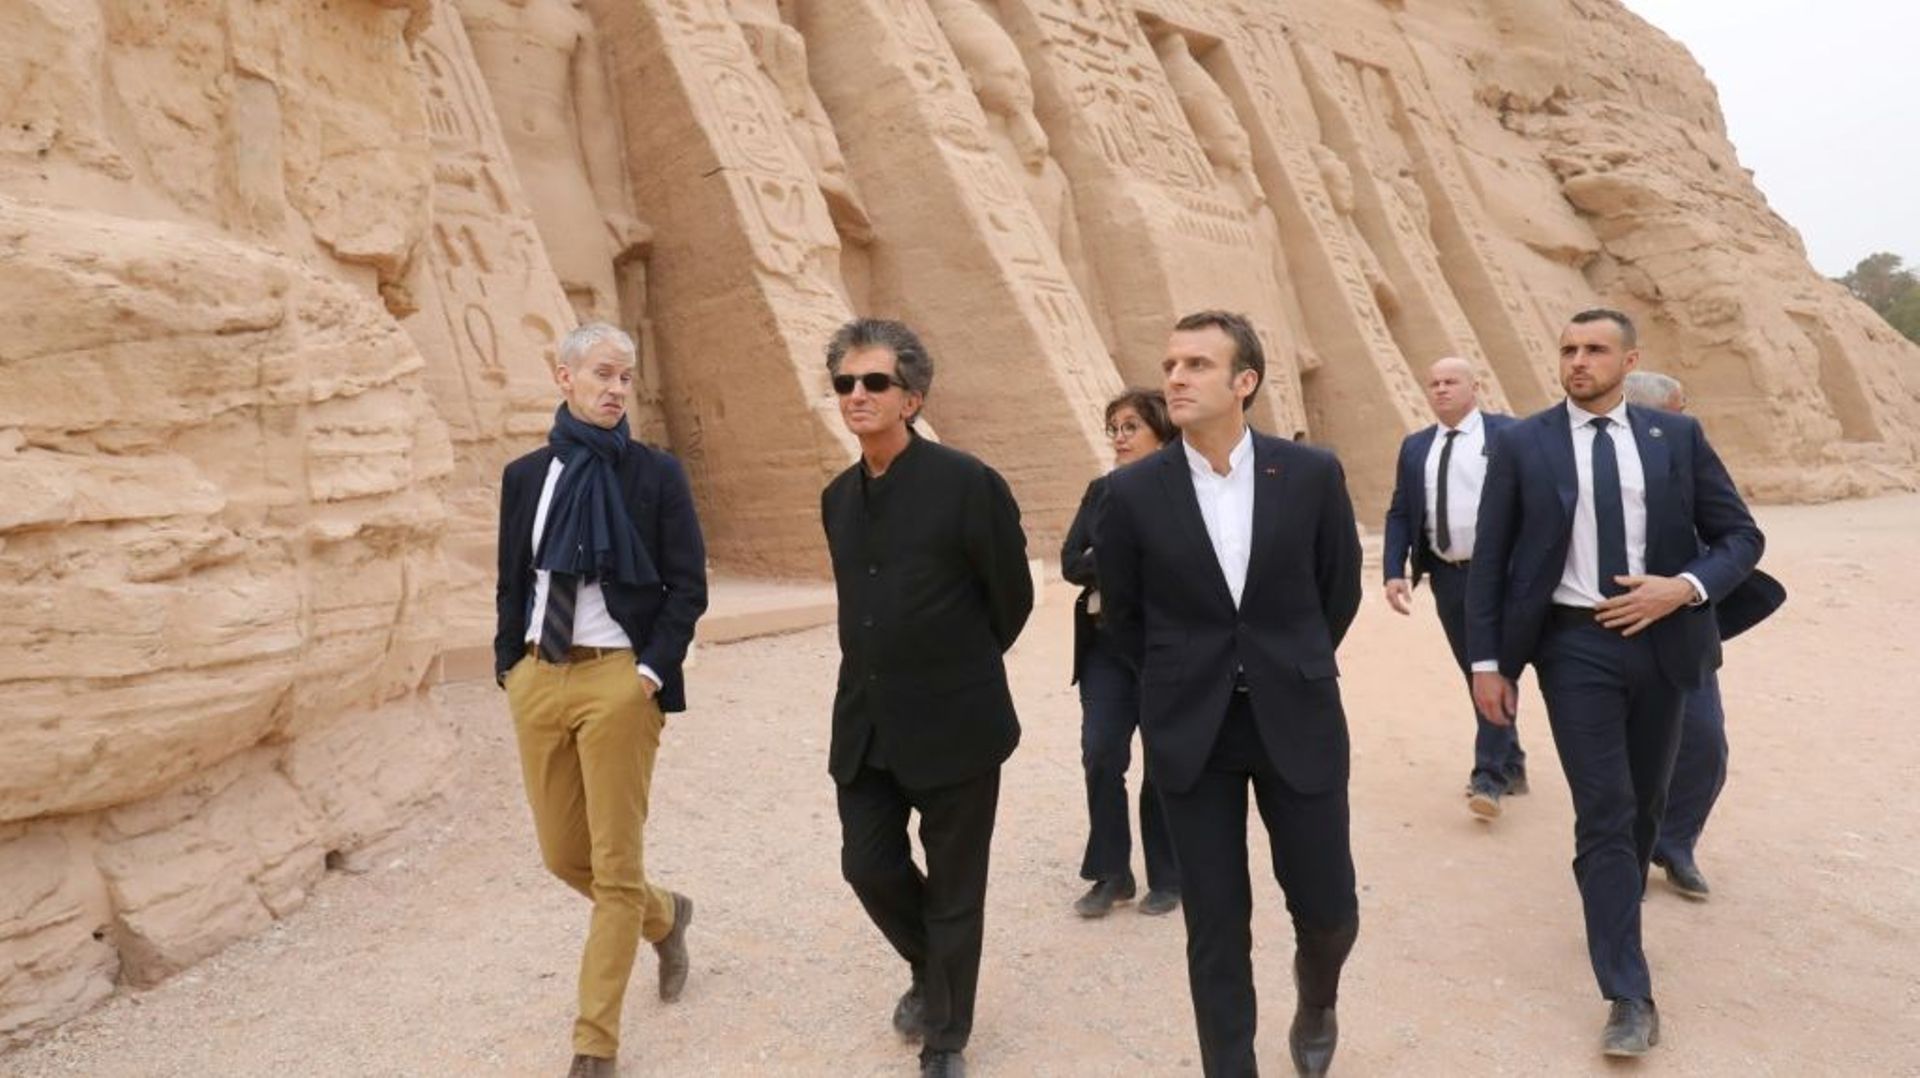 Le président français Emmanuel Macron (2e personne à droite) visite le temple d'Abou Simbel, dans le sud de l'Egypte, le 27 janvier 2019